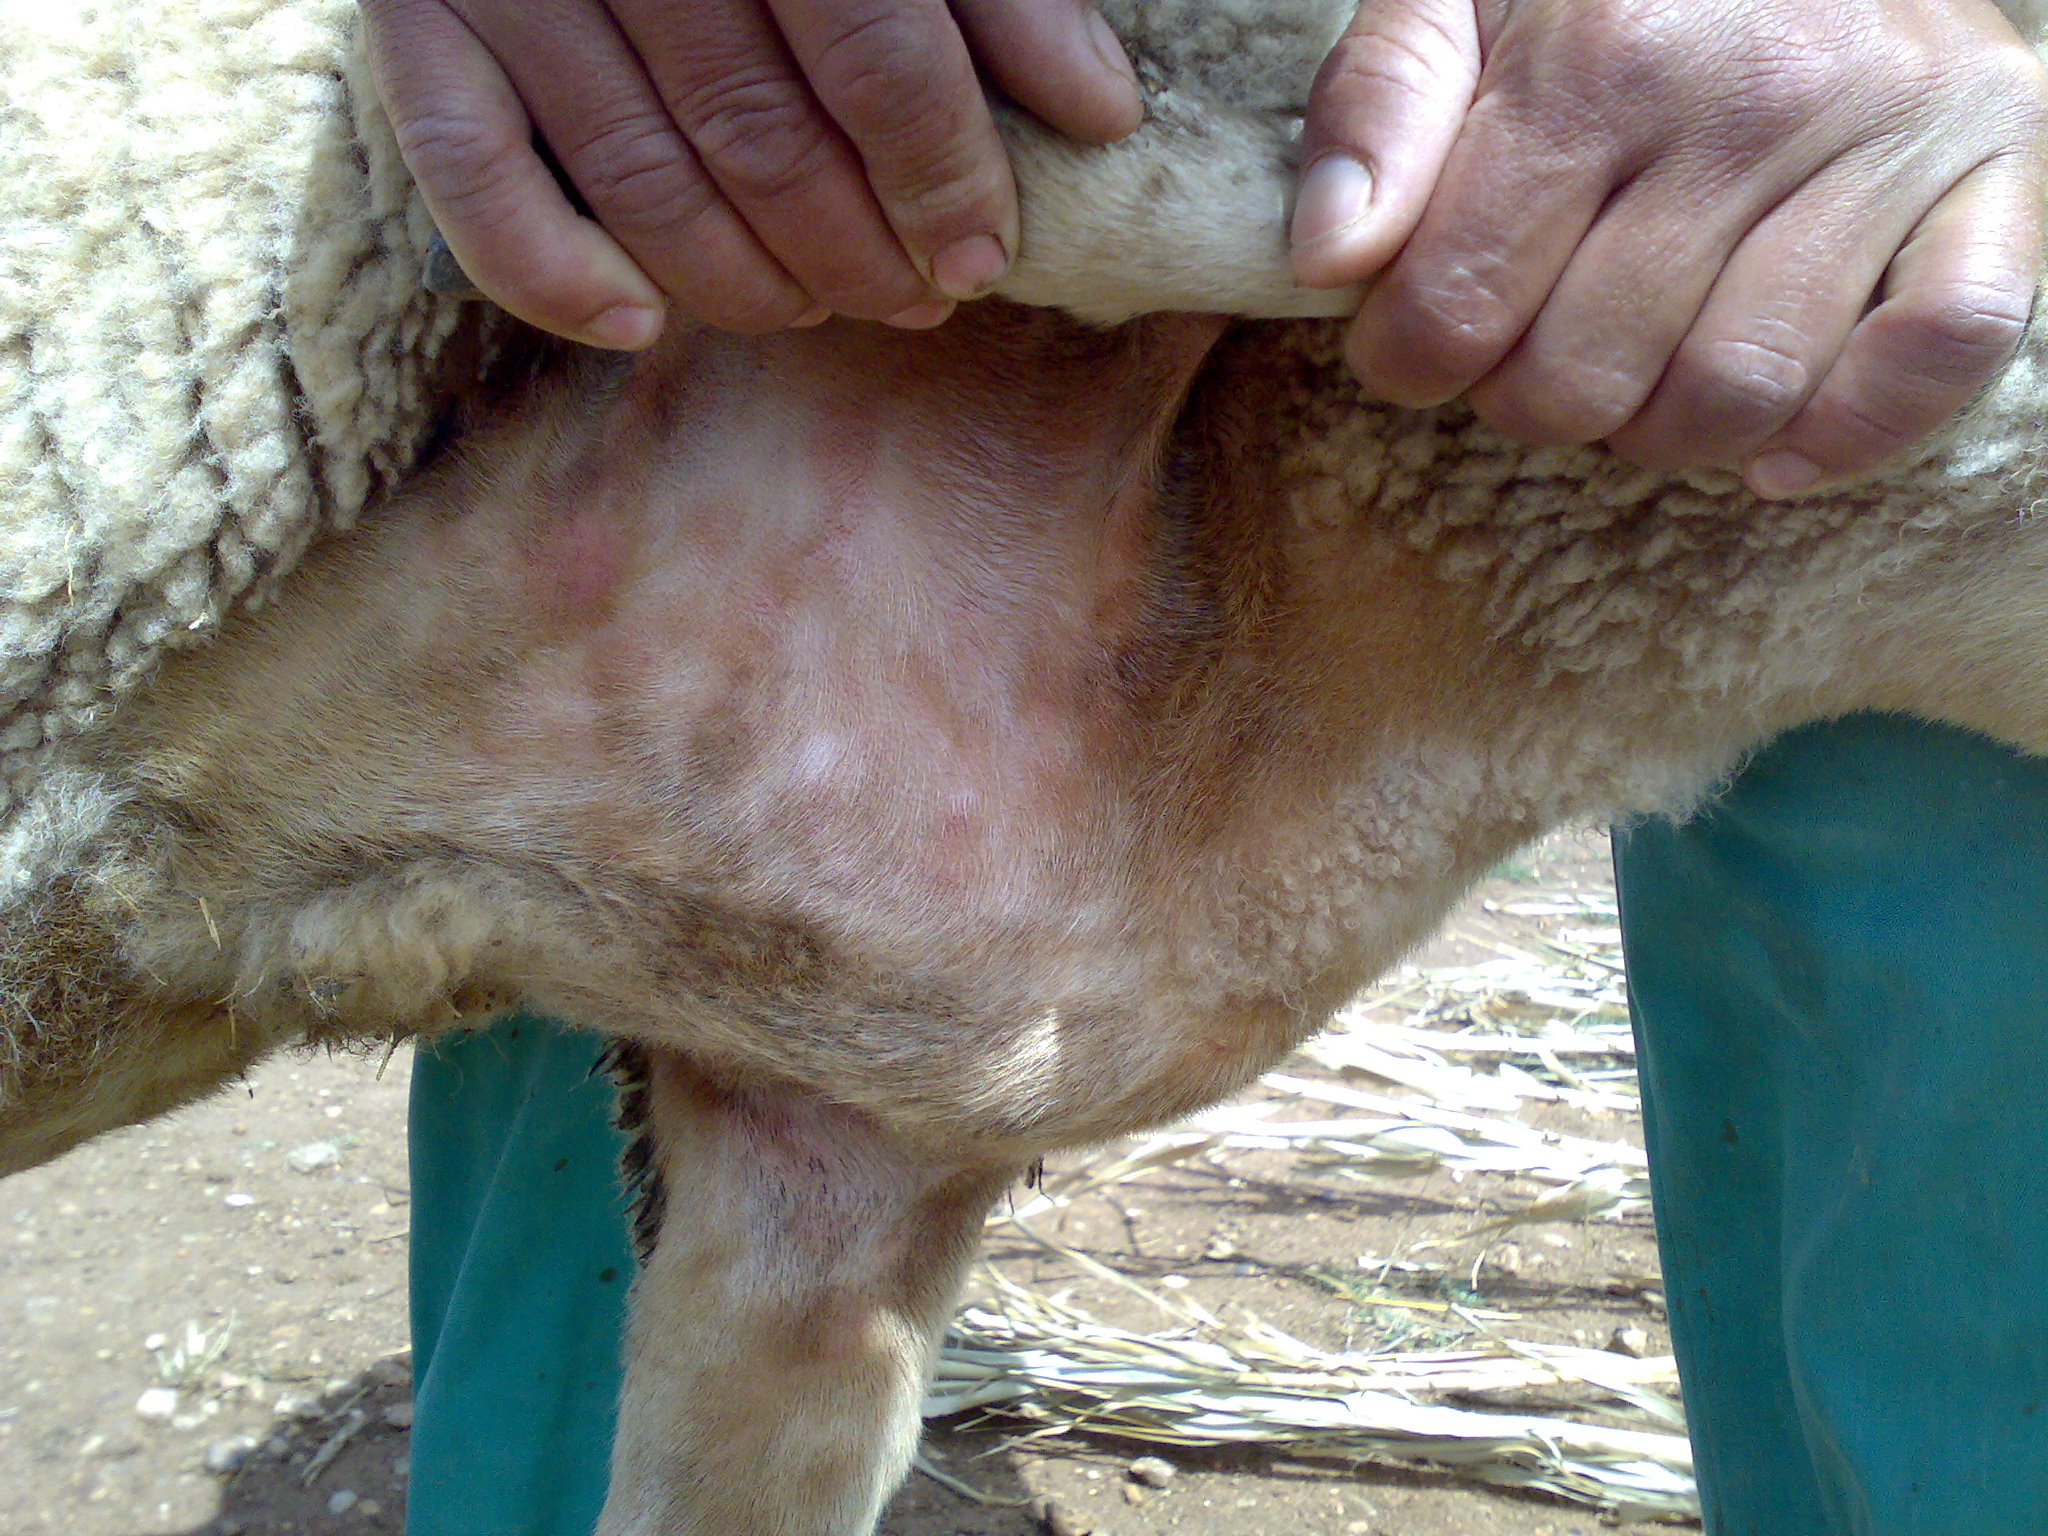 Na fotografii je detail podpaží ovce domácí, na kůži jsou červené skvrny a pupínky